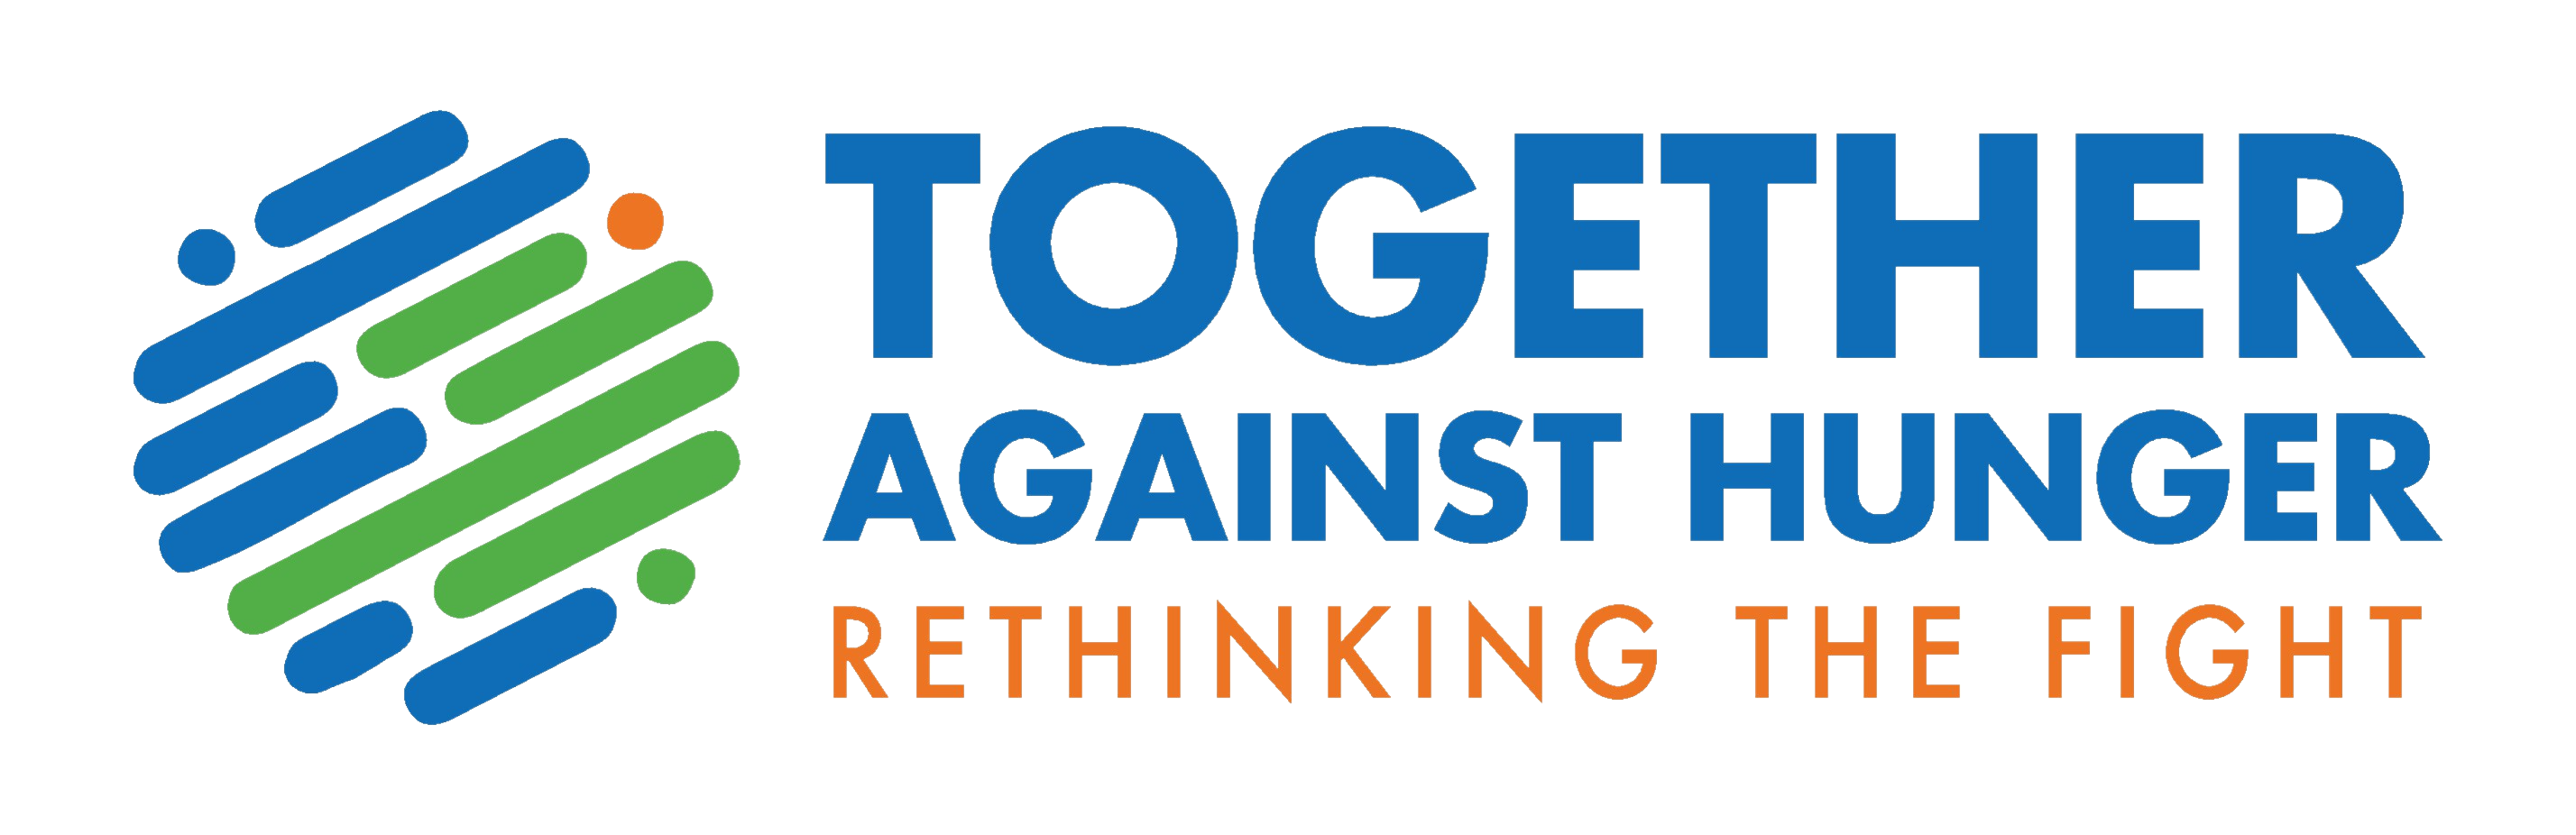 together_against_hunger_logo_vector-removebg